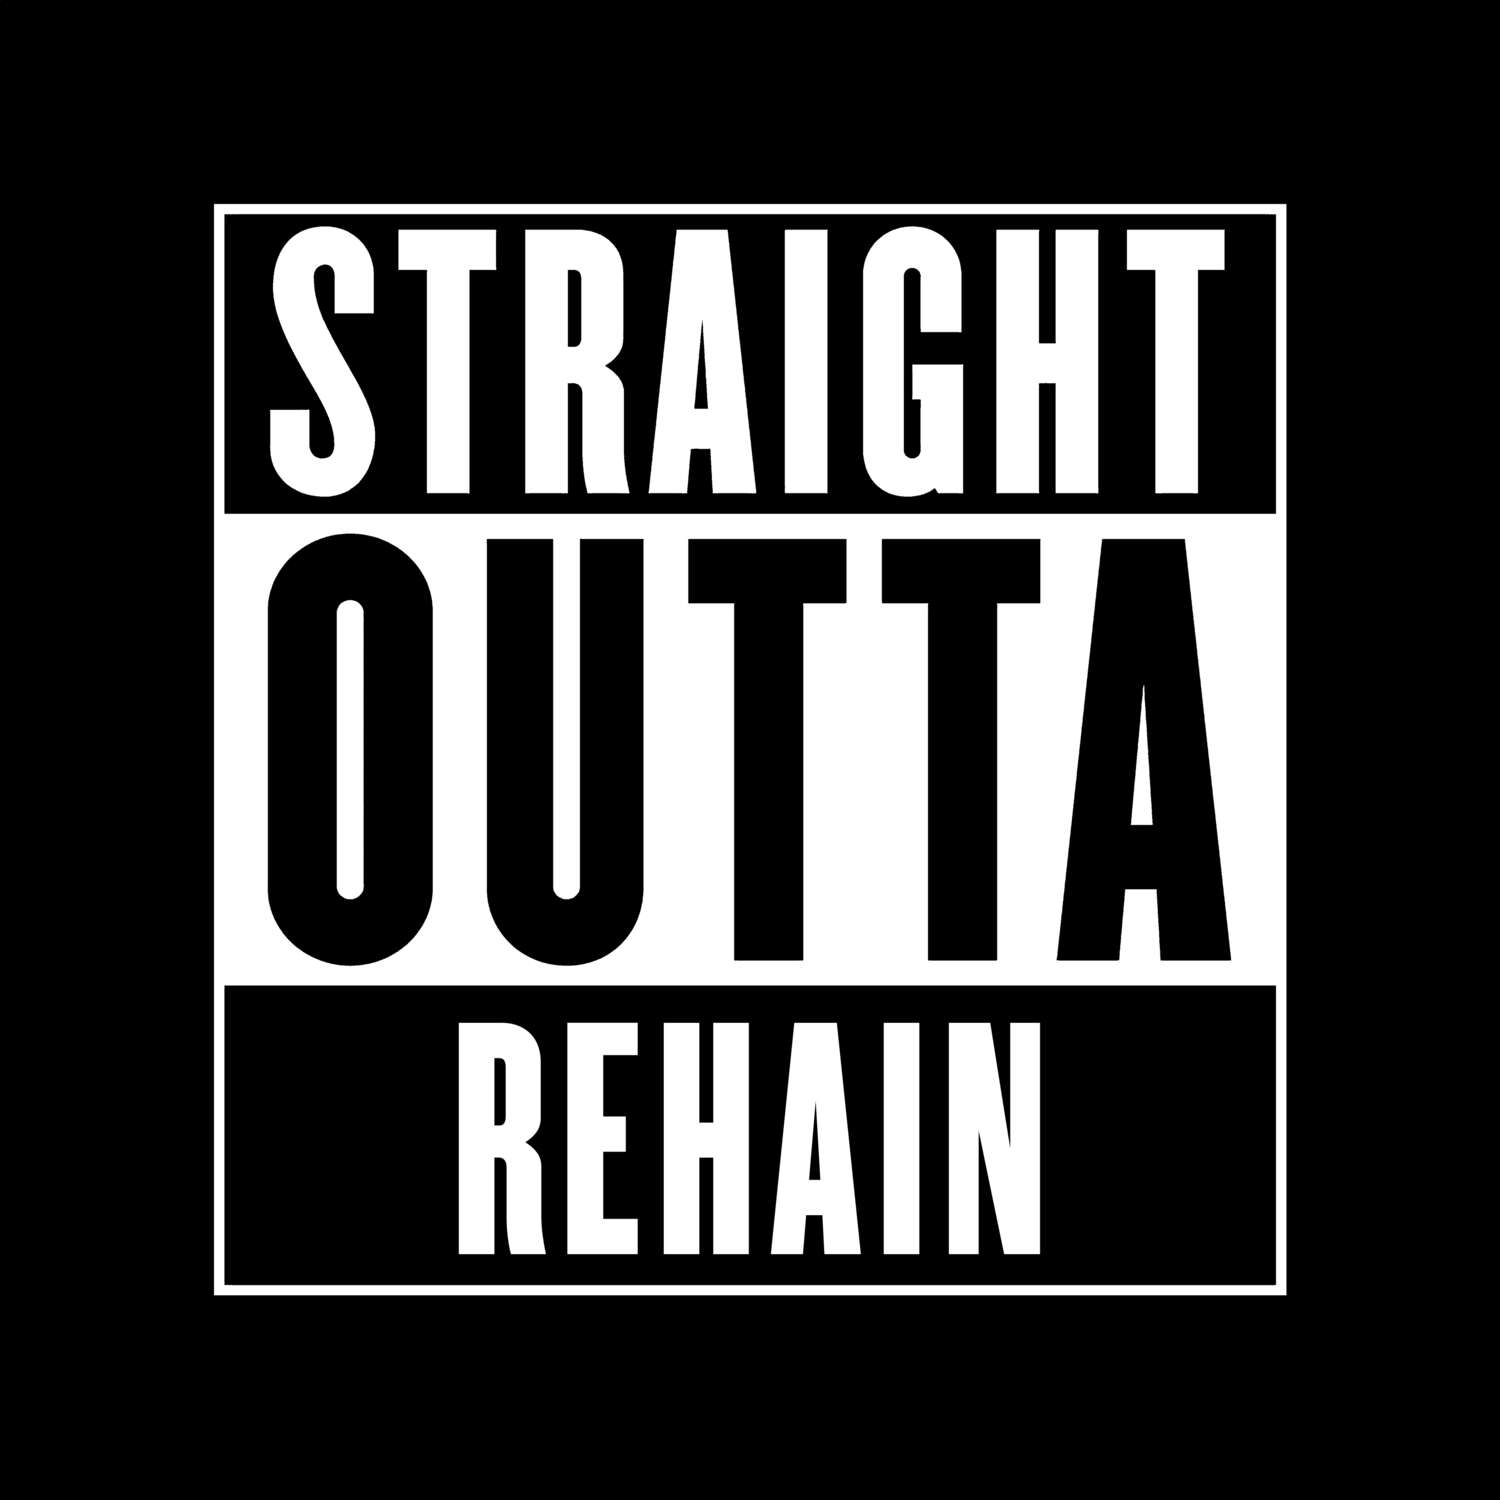 Rehain T-Shirt »Straight Outta«